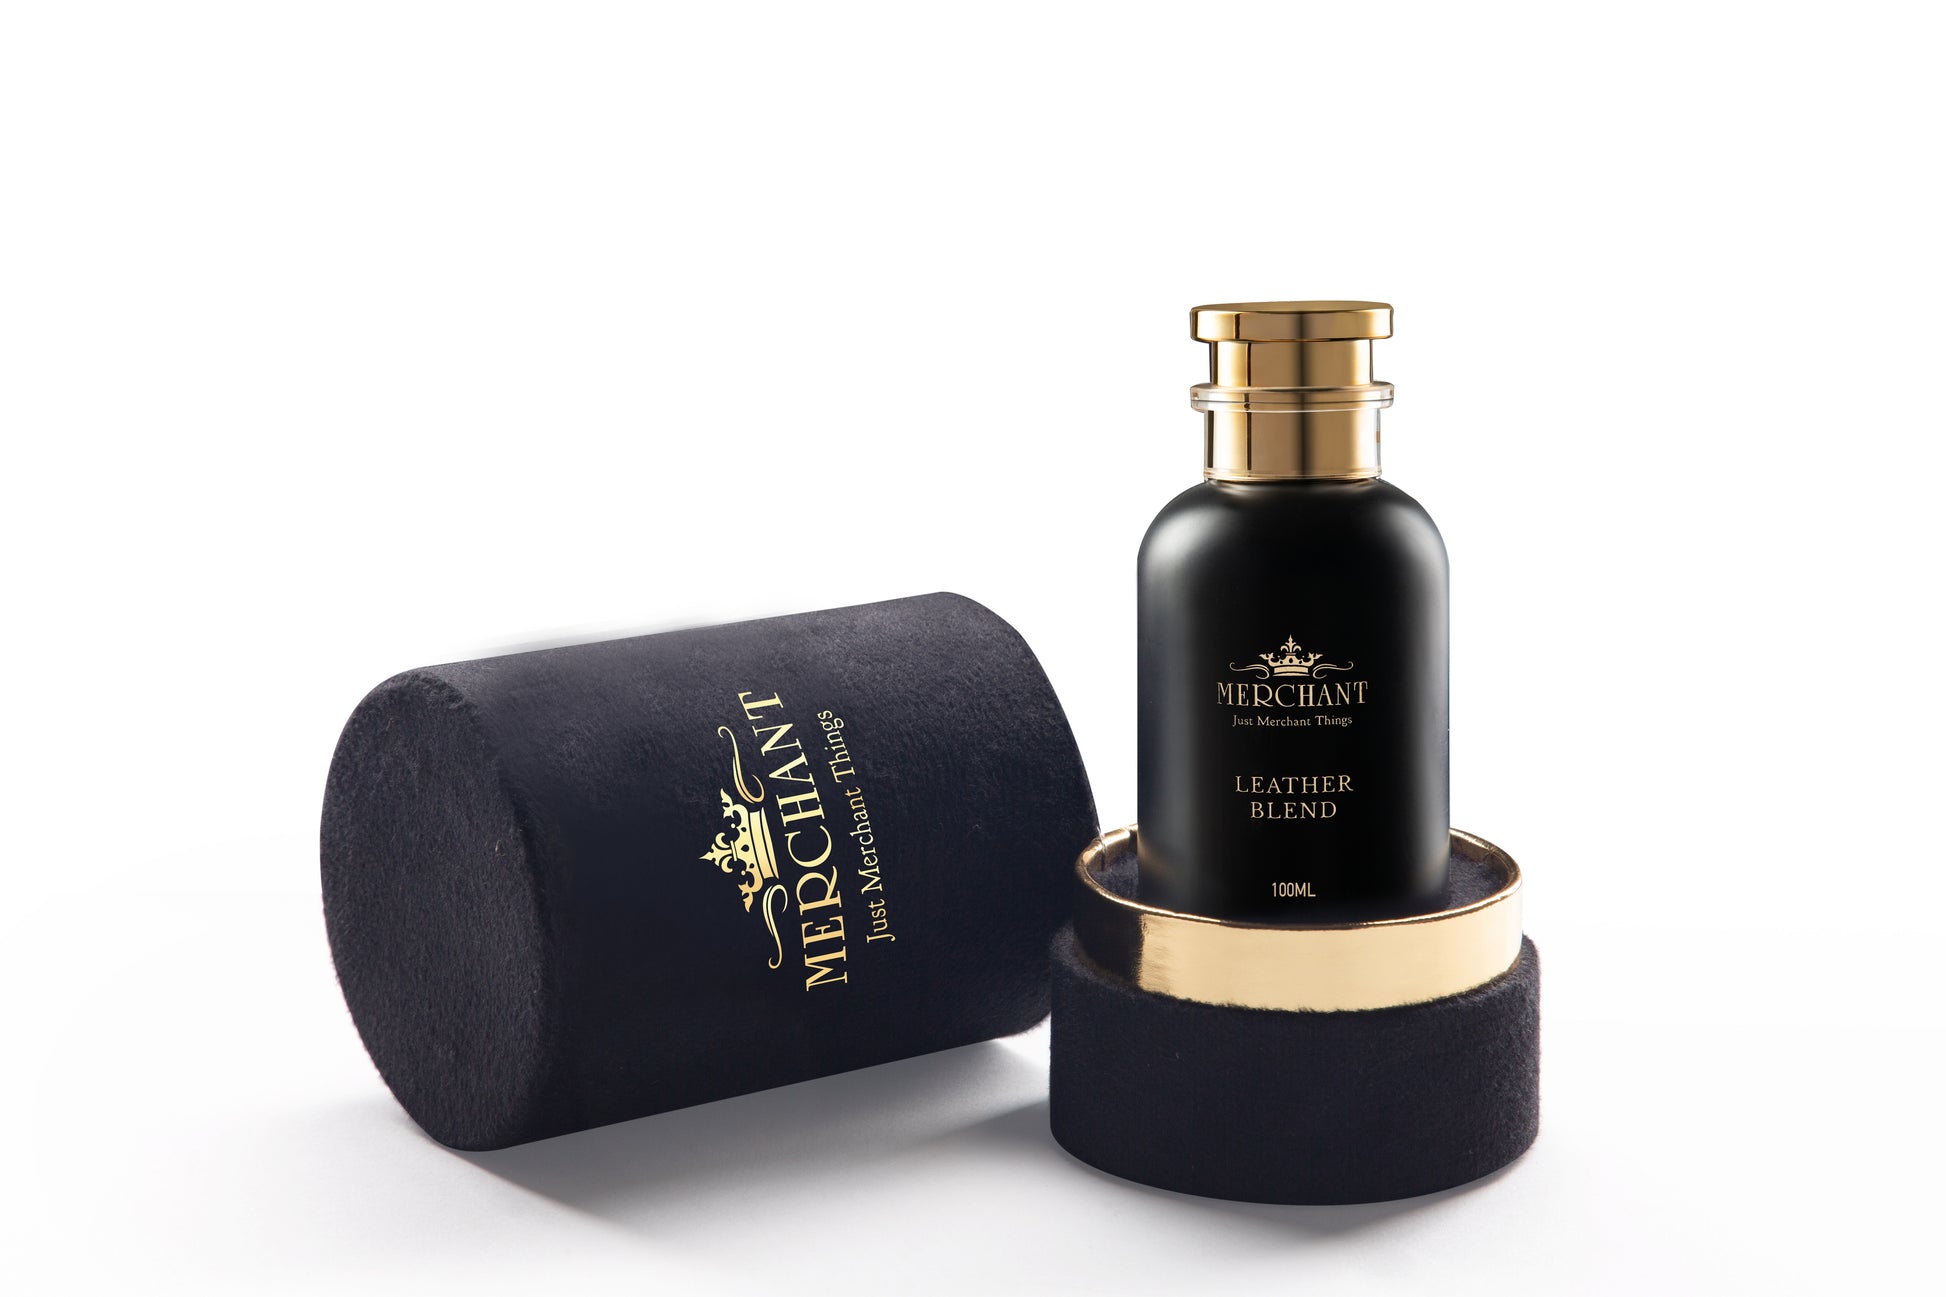 Merchant Leather Blend | Eau De Parfum | Unisex Perfume | 100 ml